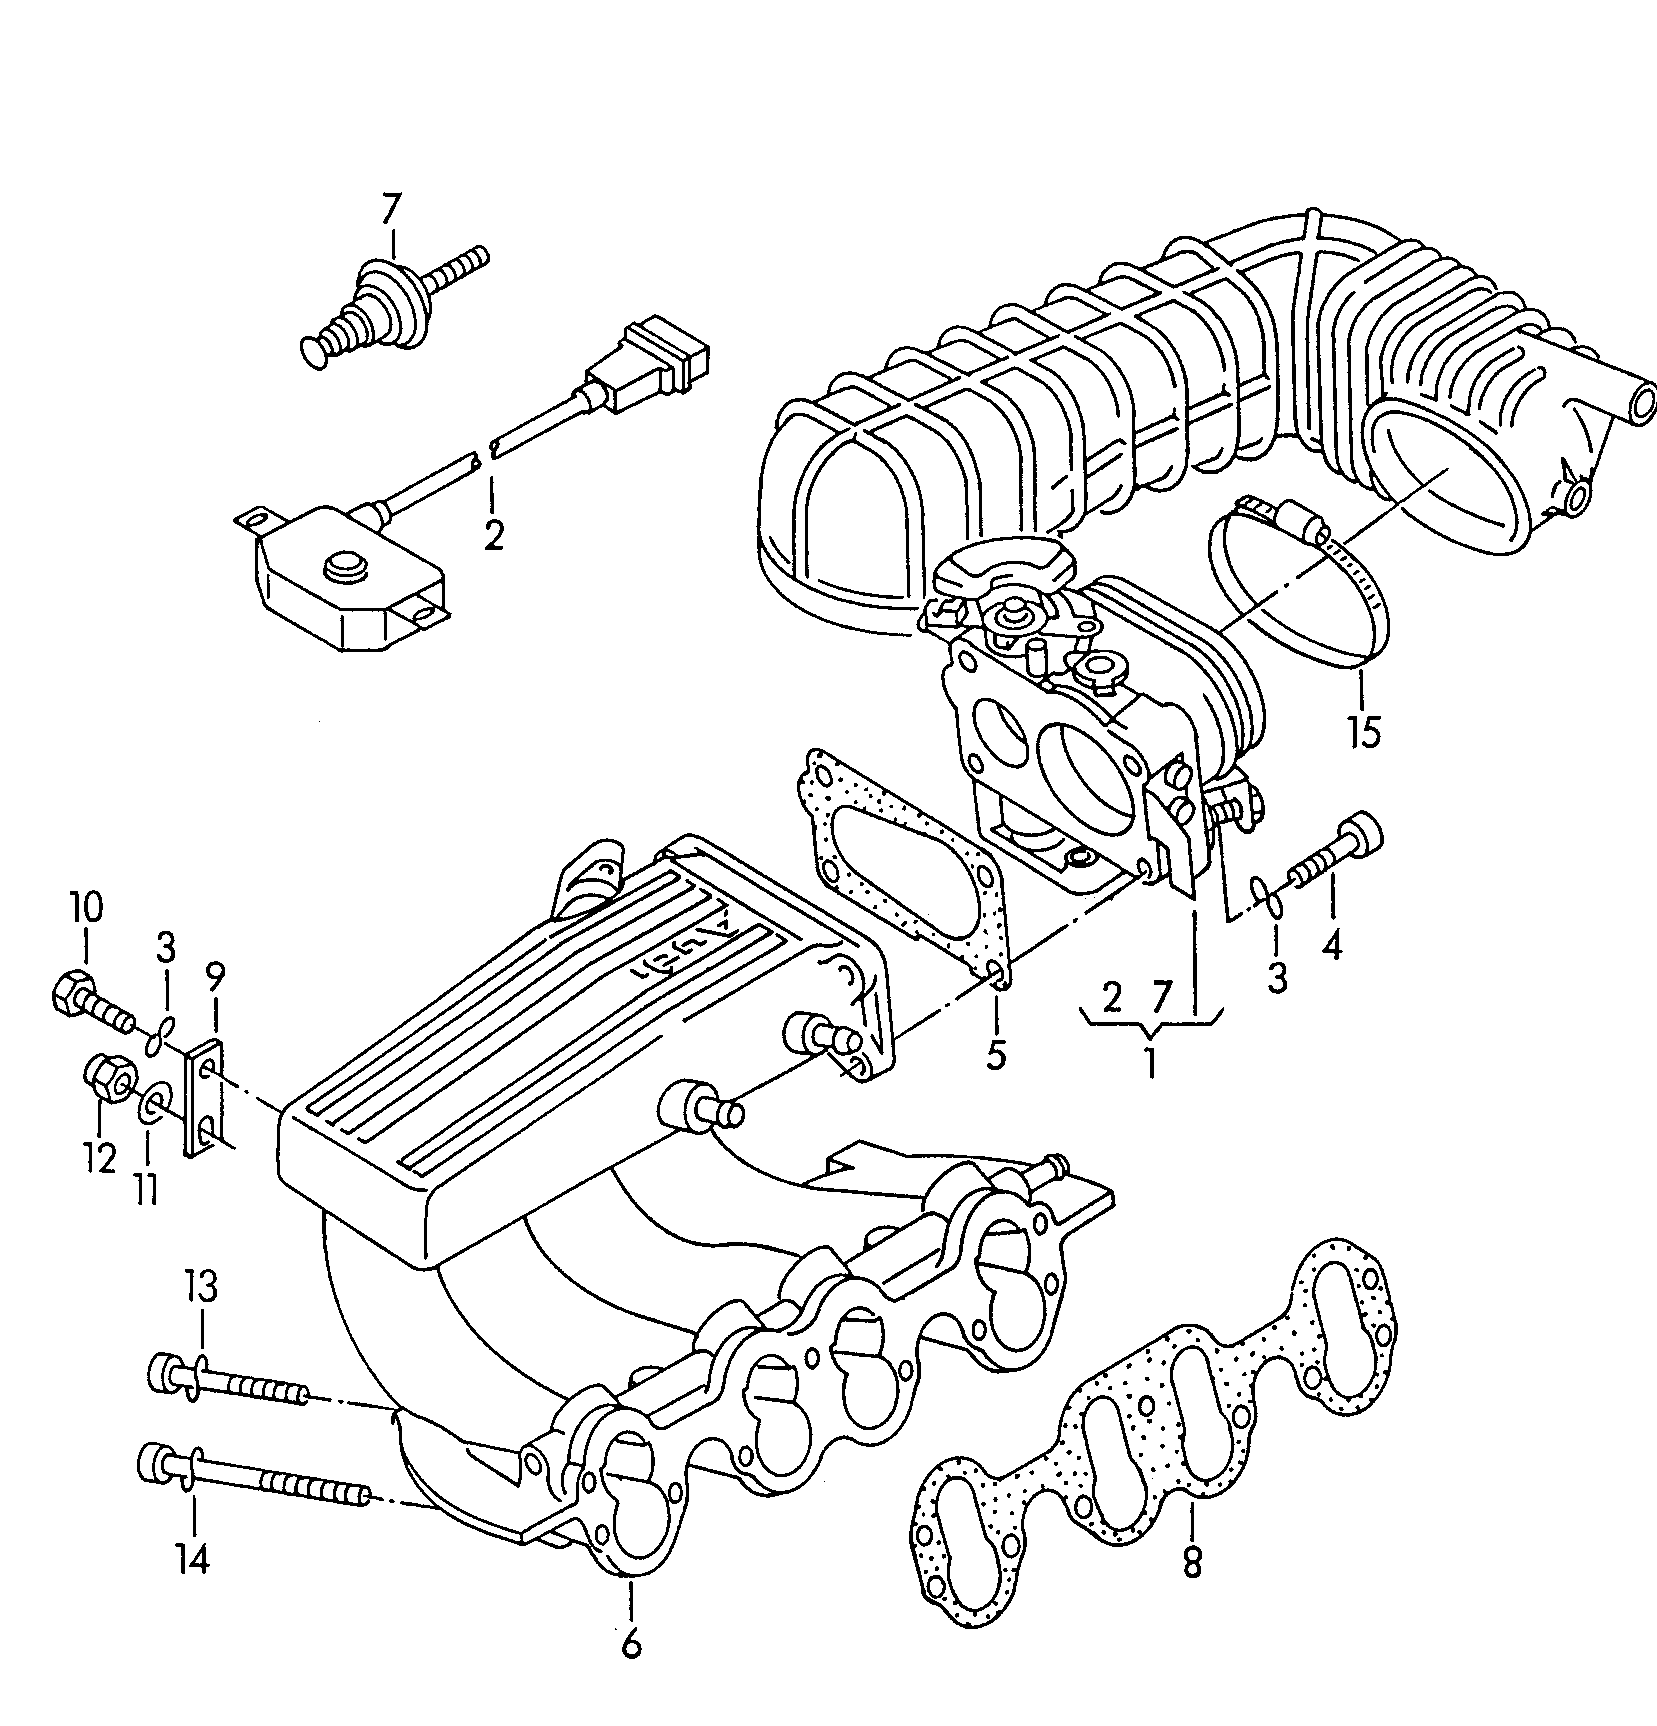 korpus z przepustnicamikrociec ssacy 2,0 l - Audi 100/Avant - a100